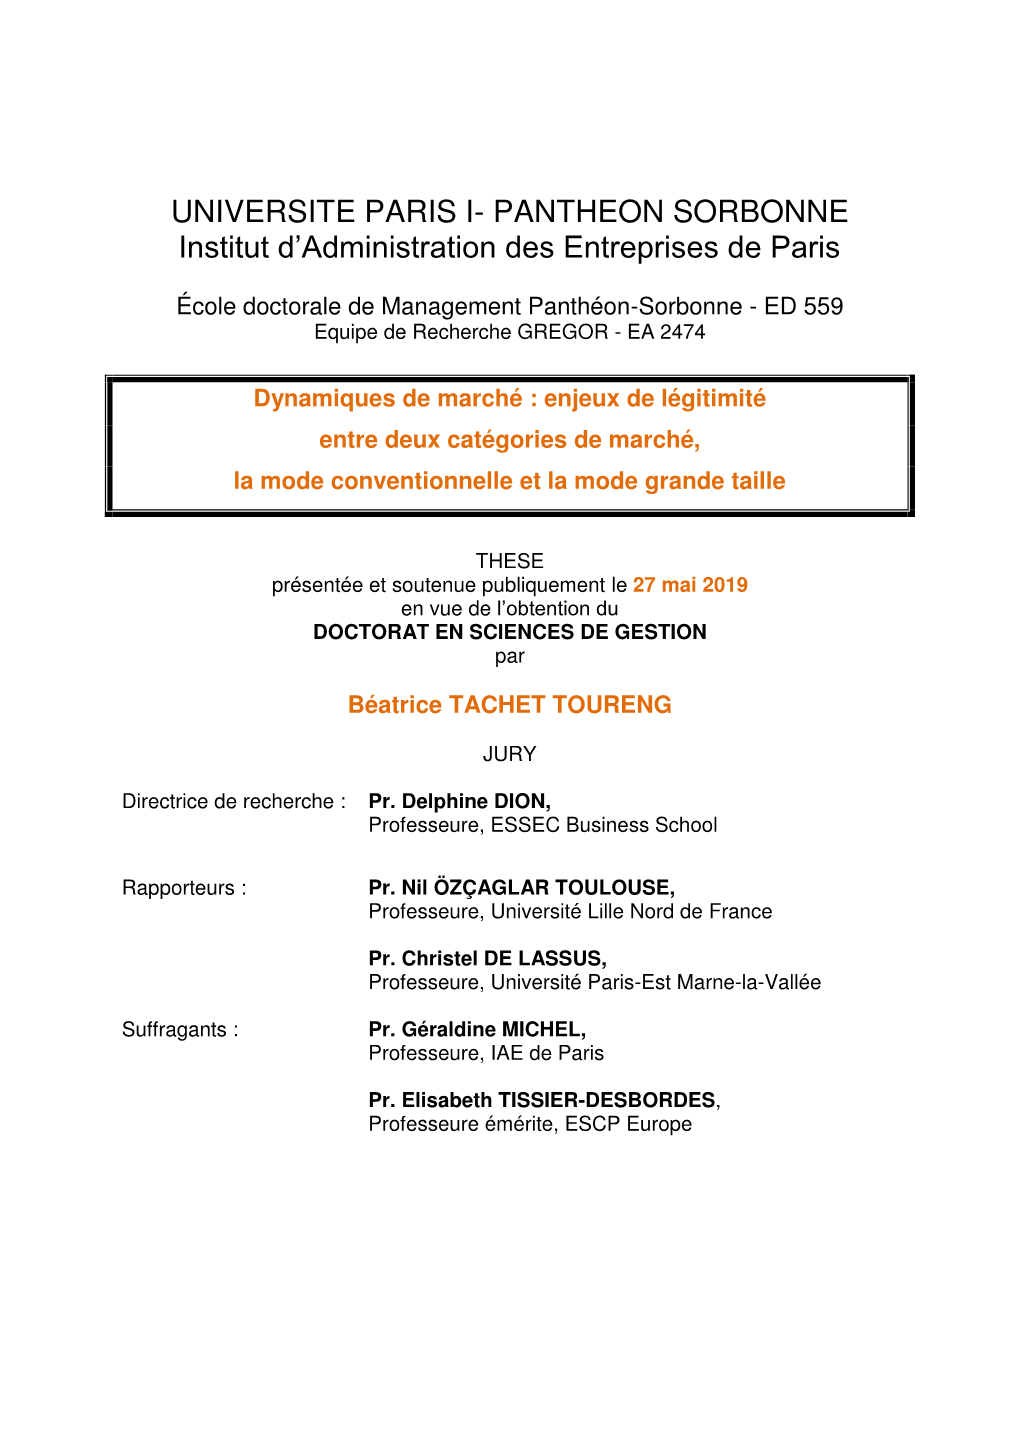 UNIVERSITE PARIS I- PANTHEON SORBONNE Institut D’Administration Des Entreprises De Paris